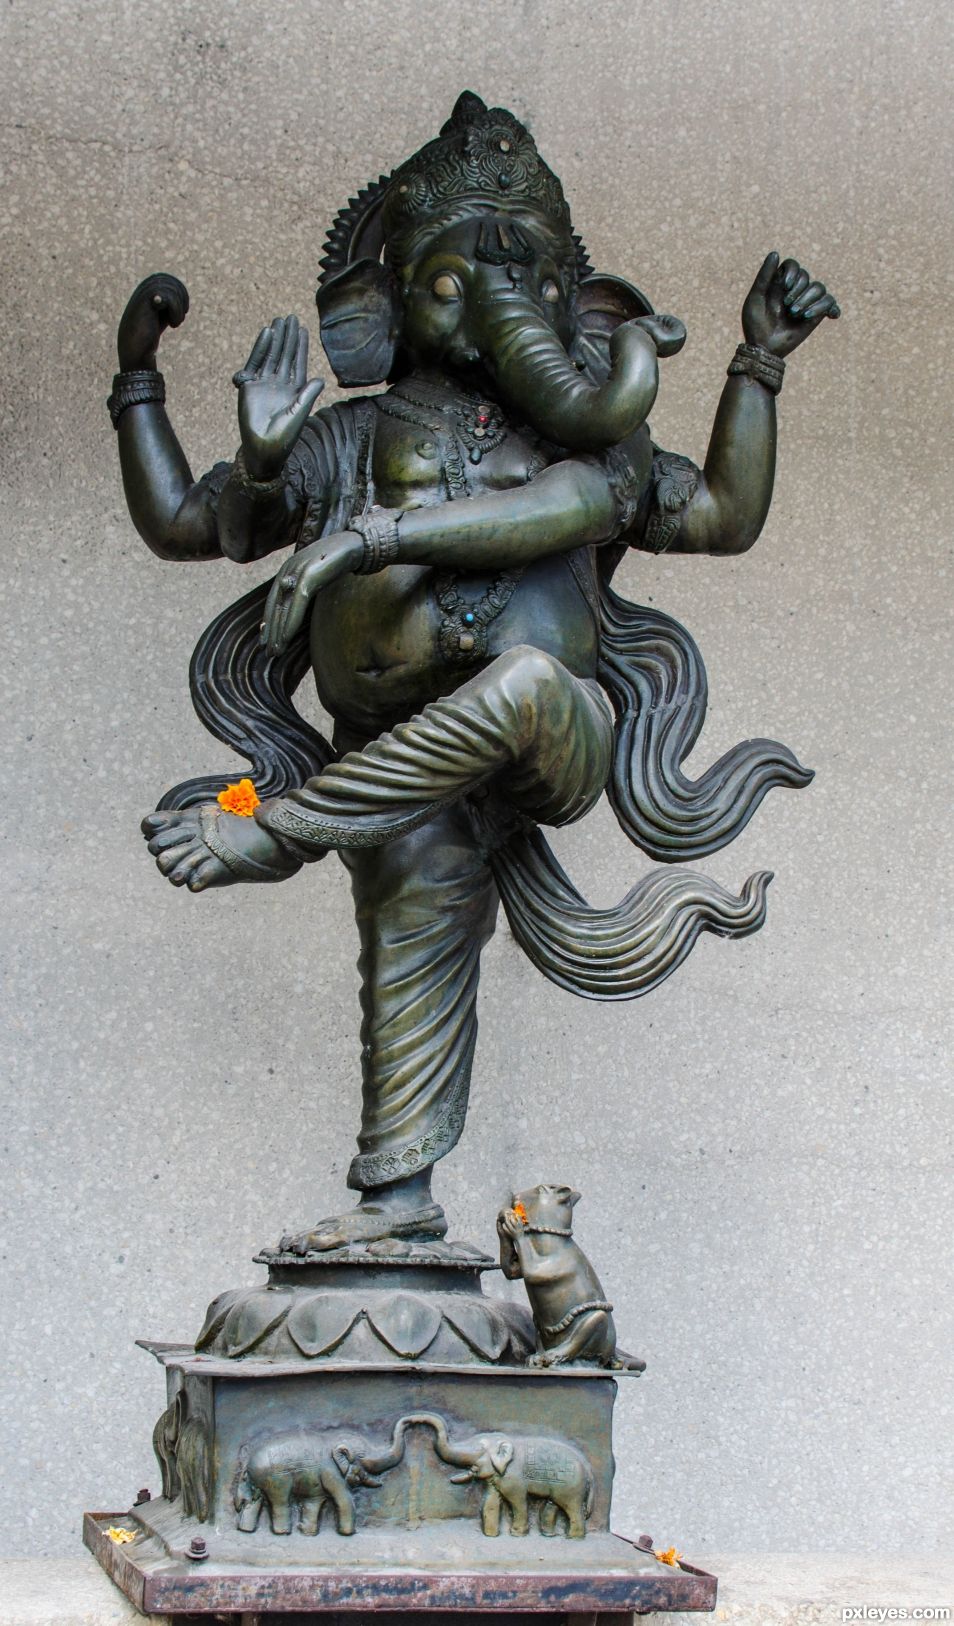 Ganesha outside a local eatery